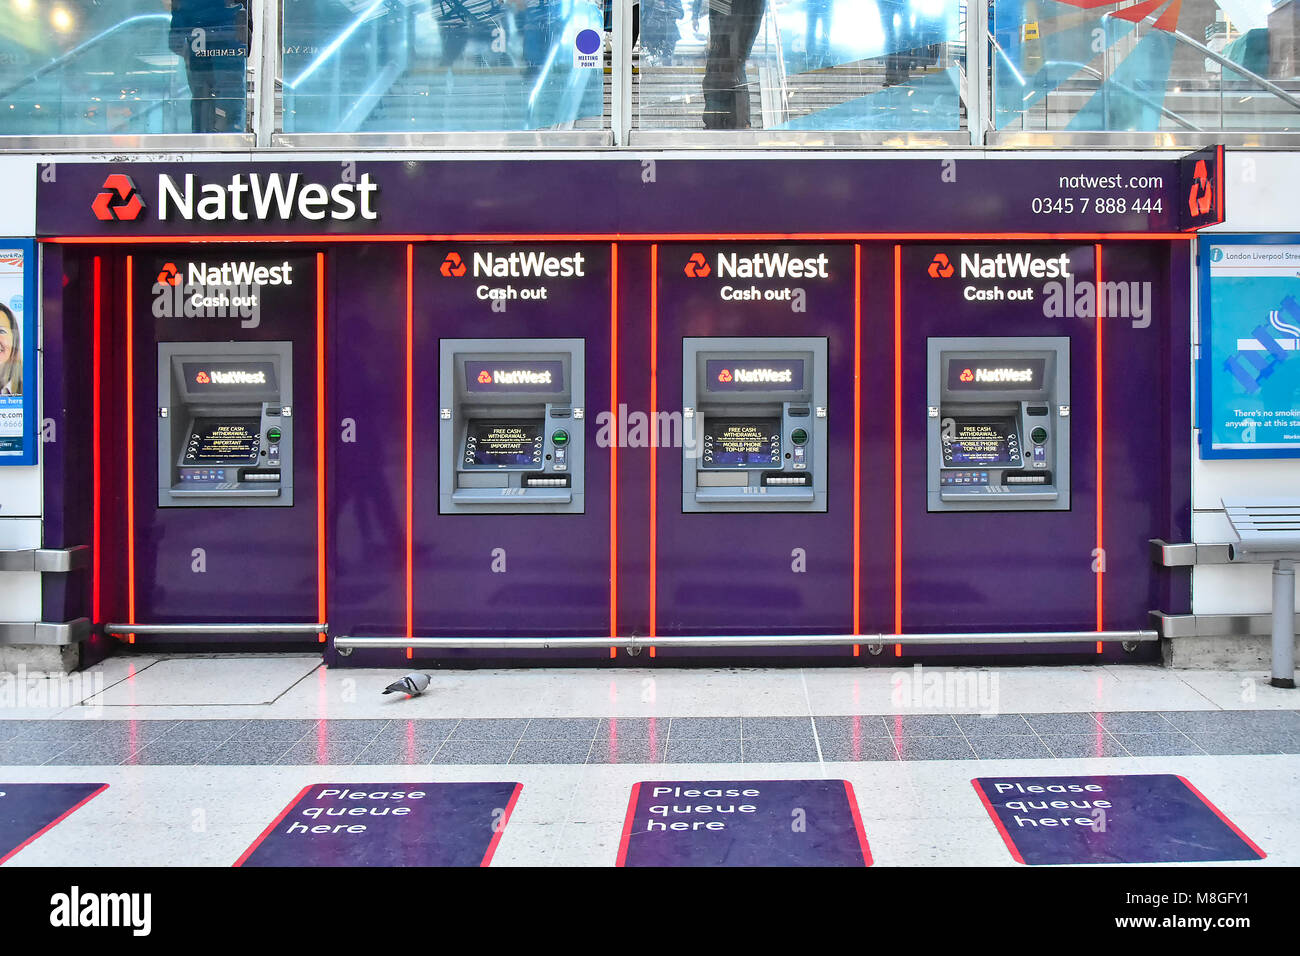 Des patrouilles d'un pigeon très calme déserté rangée de trous dans le mur de la banque NatWest trésorerie Trésorerie ATM machine points à la gare de Liverpool Street, London England UK Banque D'Images